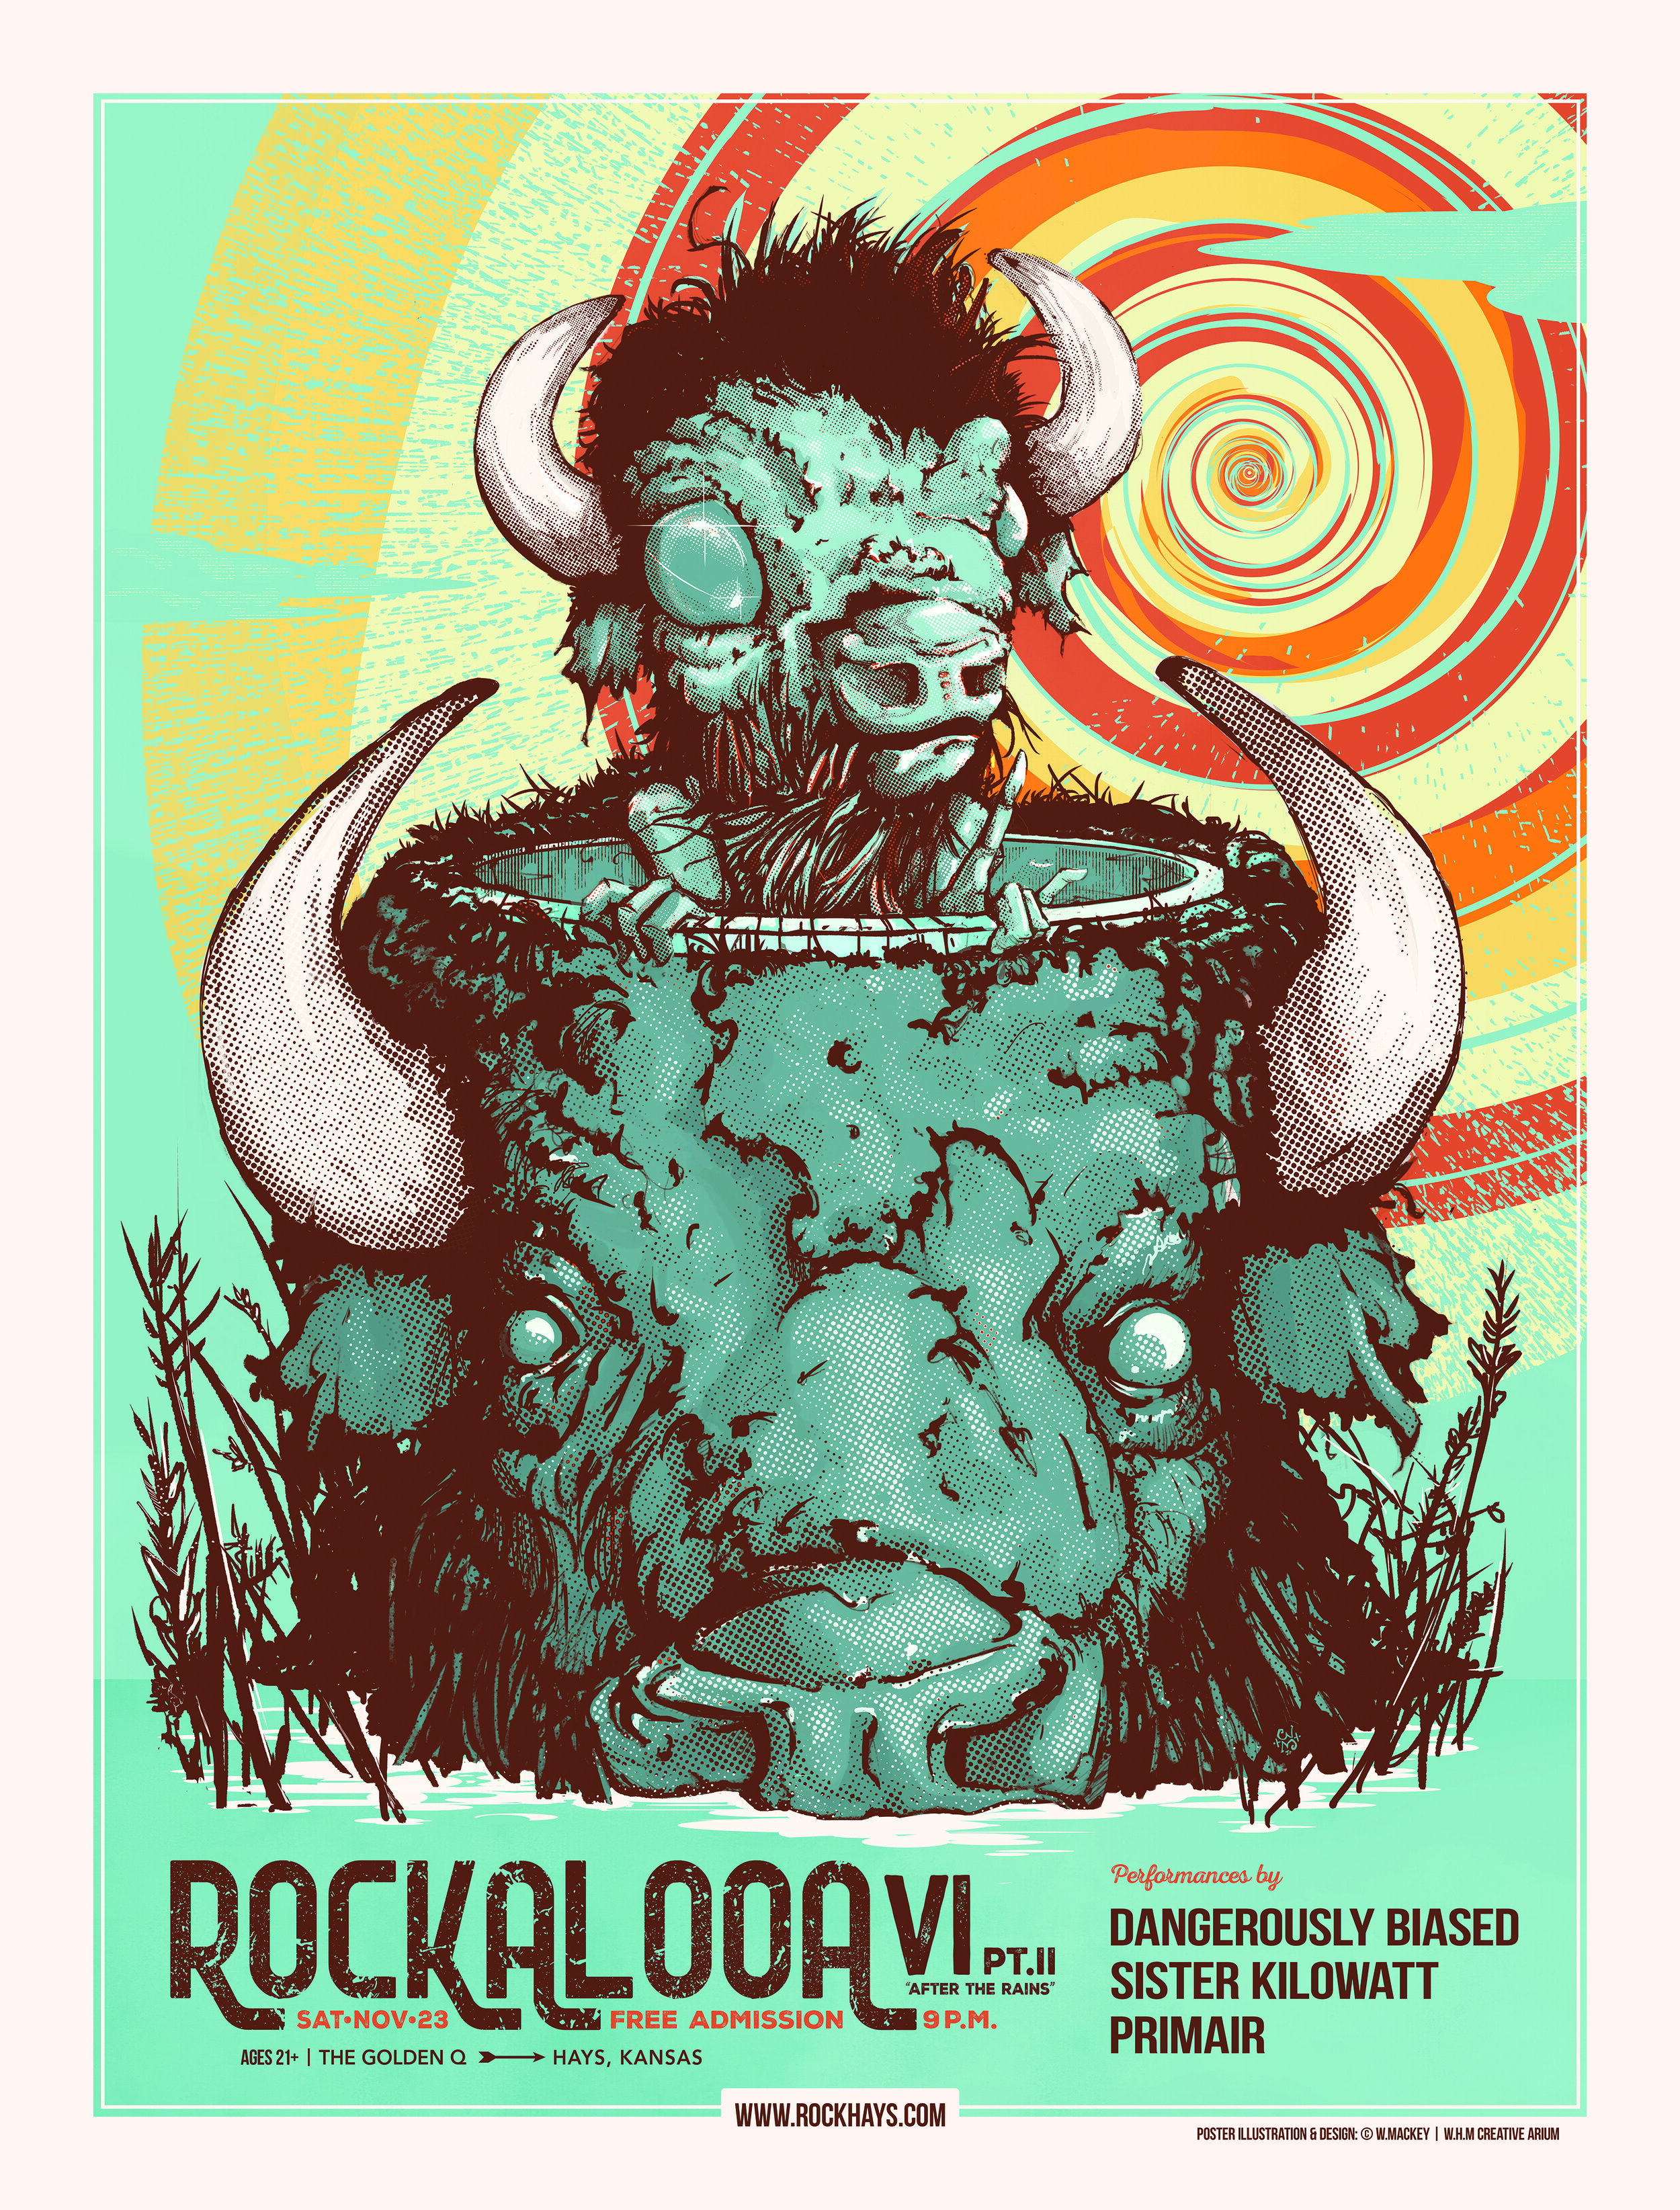 ROCKALOOA VI (Part II) - poster illustration & design